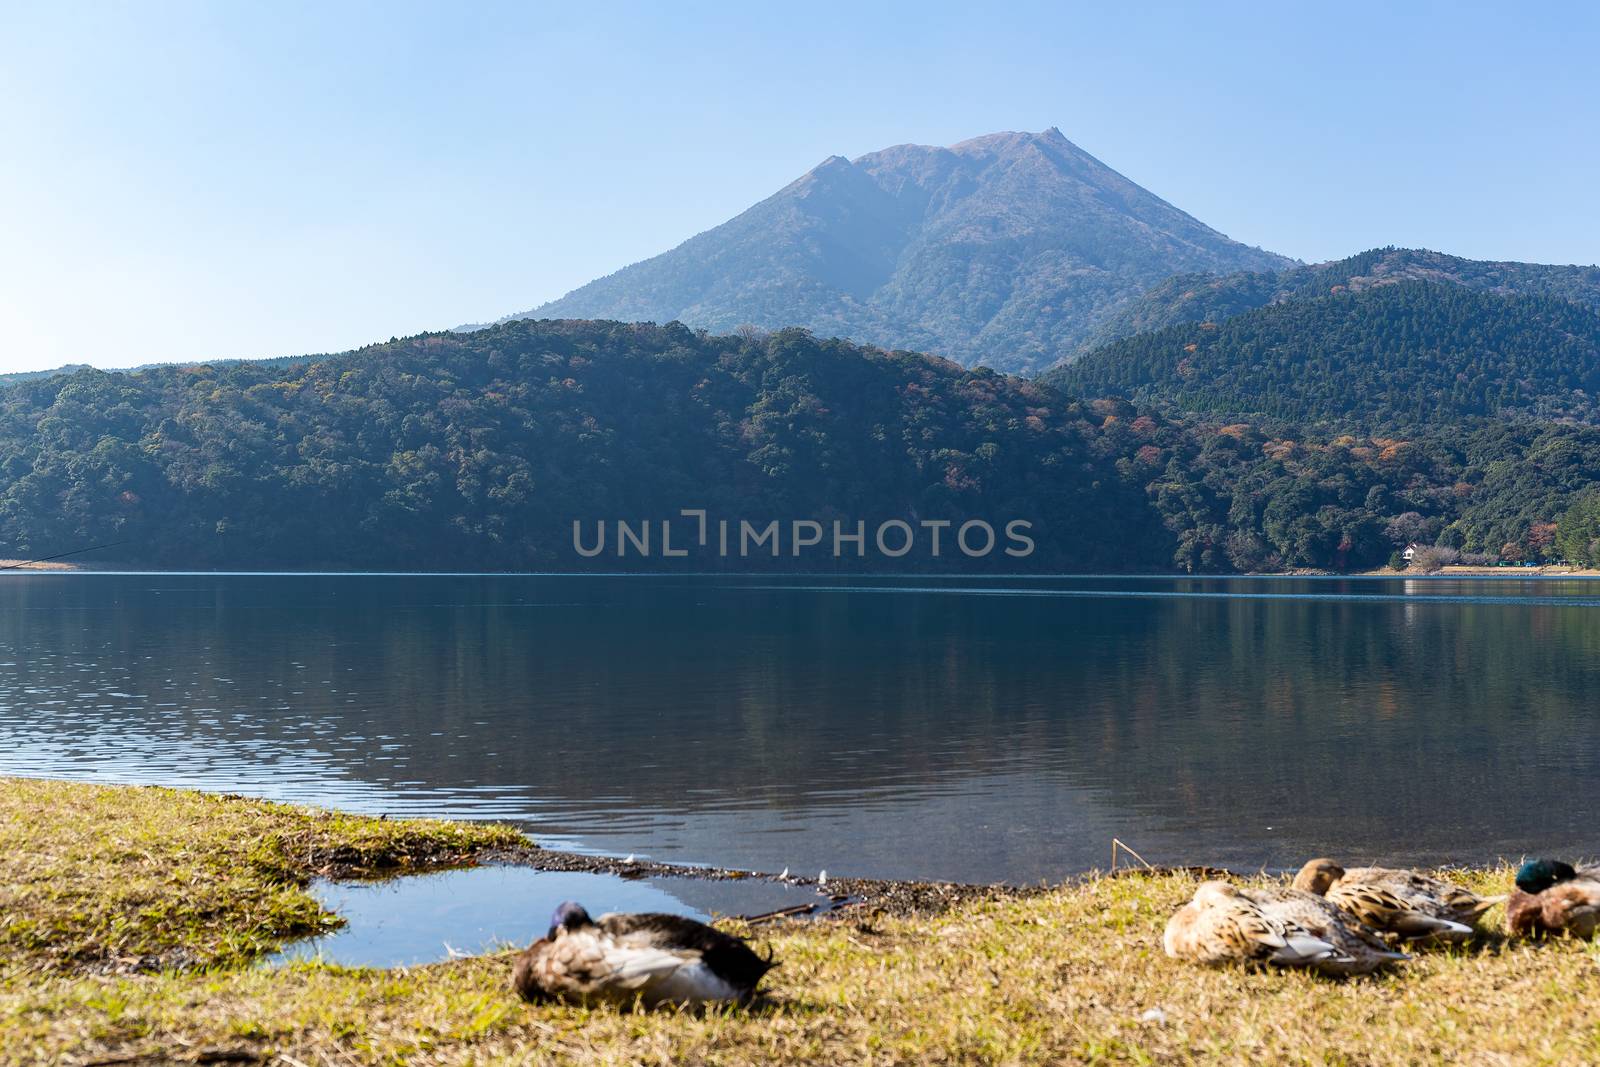 Mount Kirishima by leungchopan